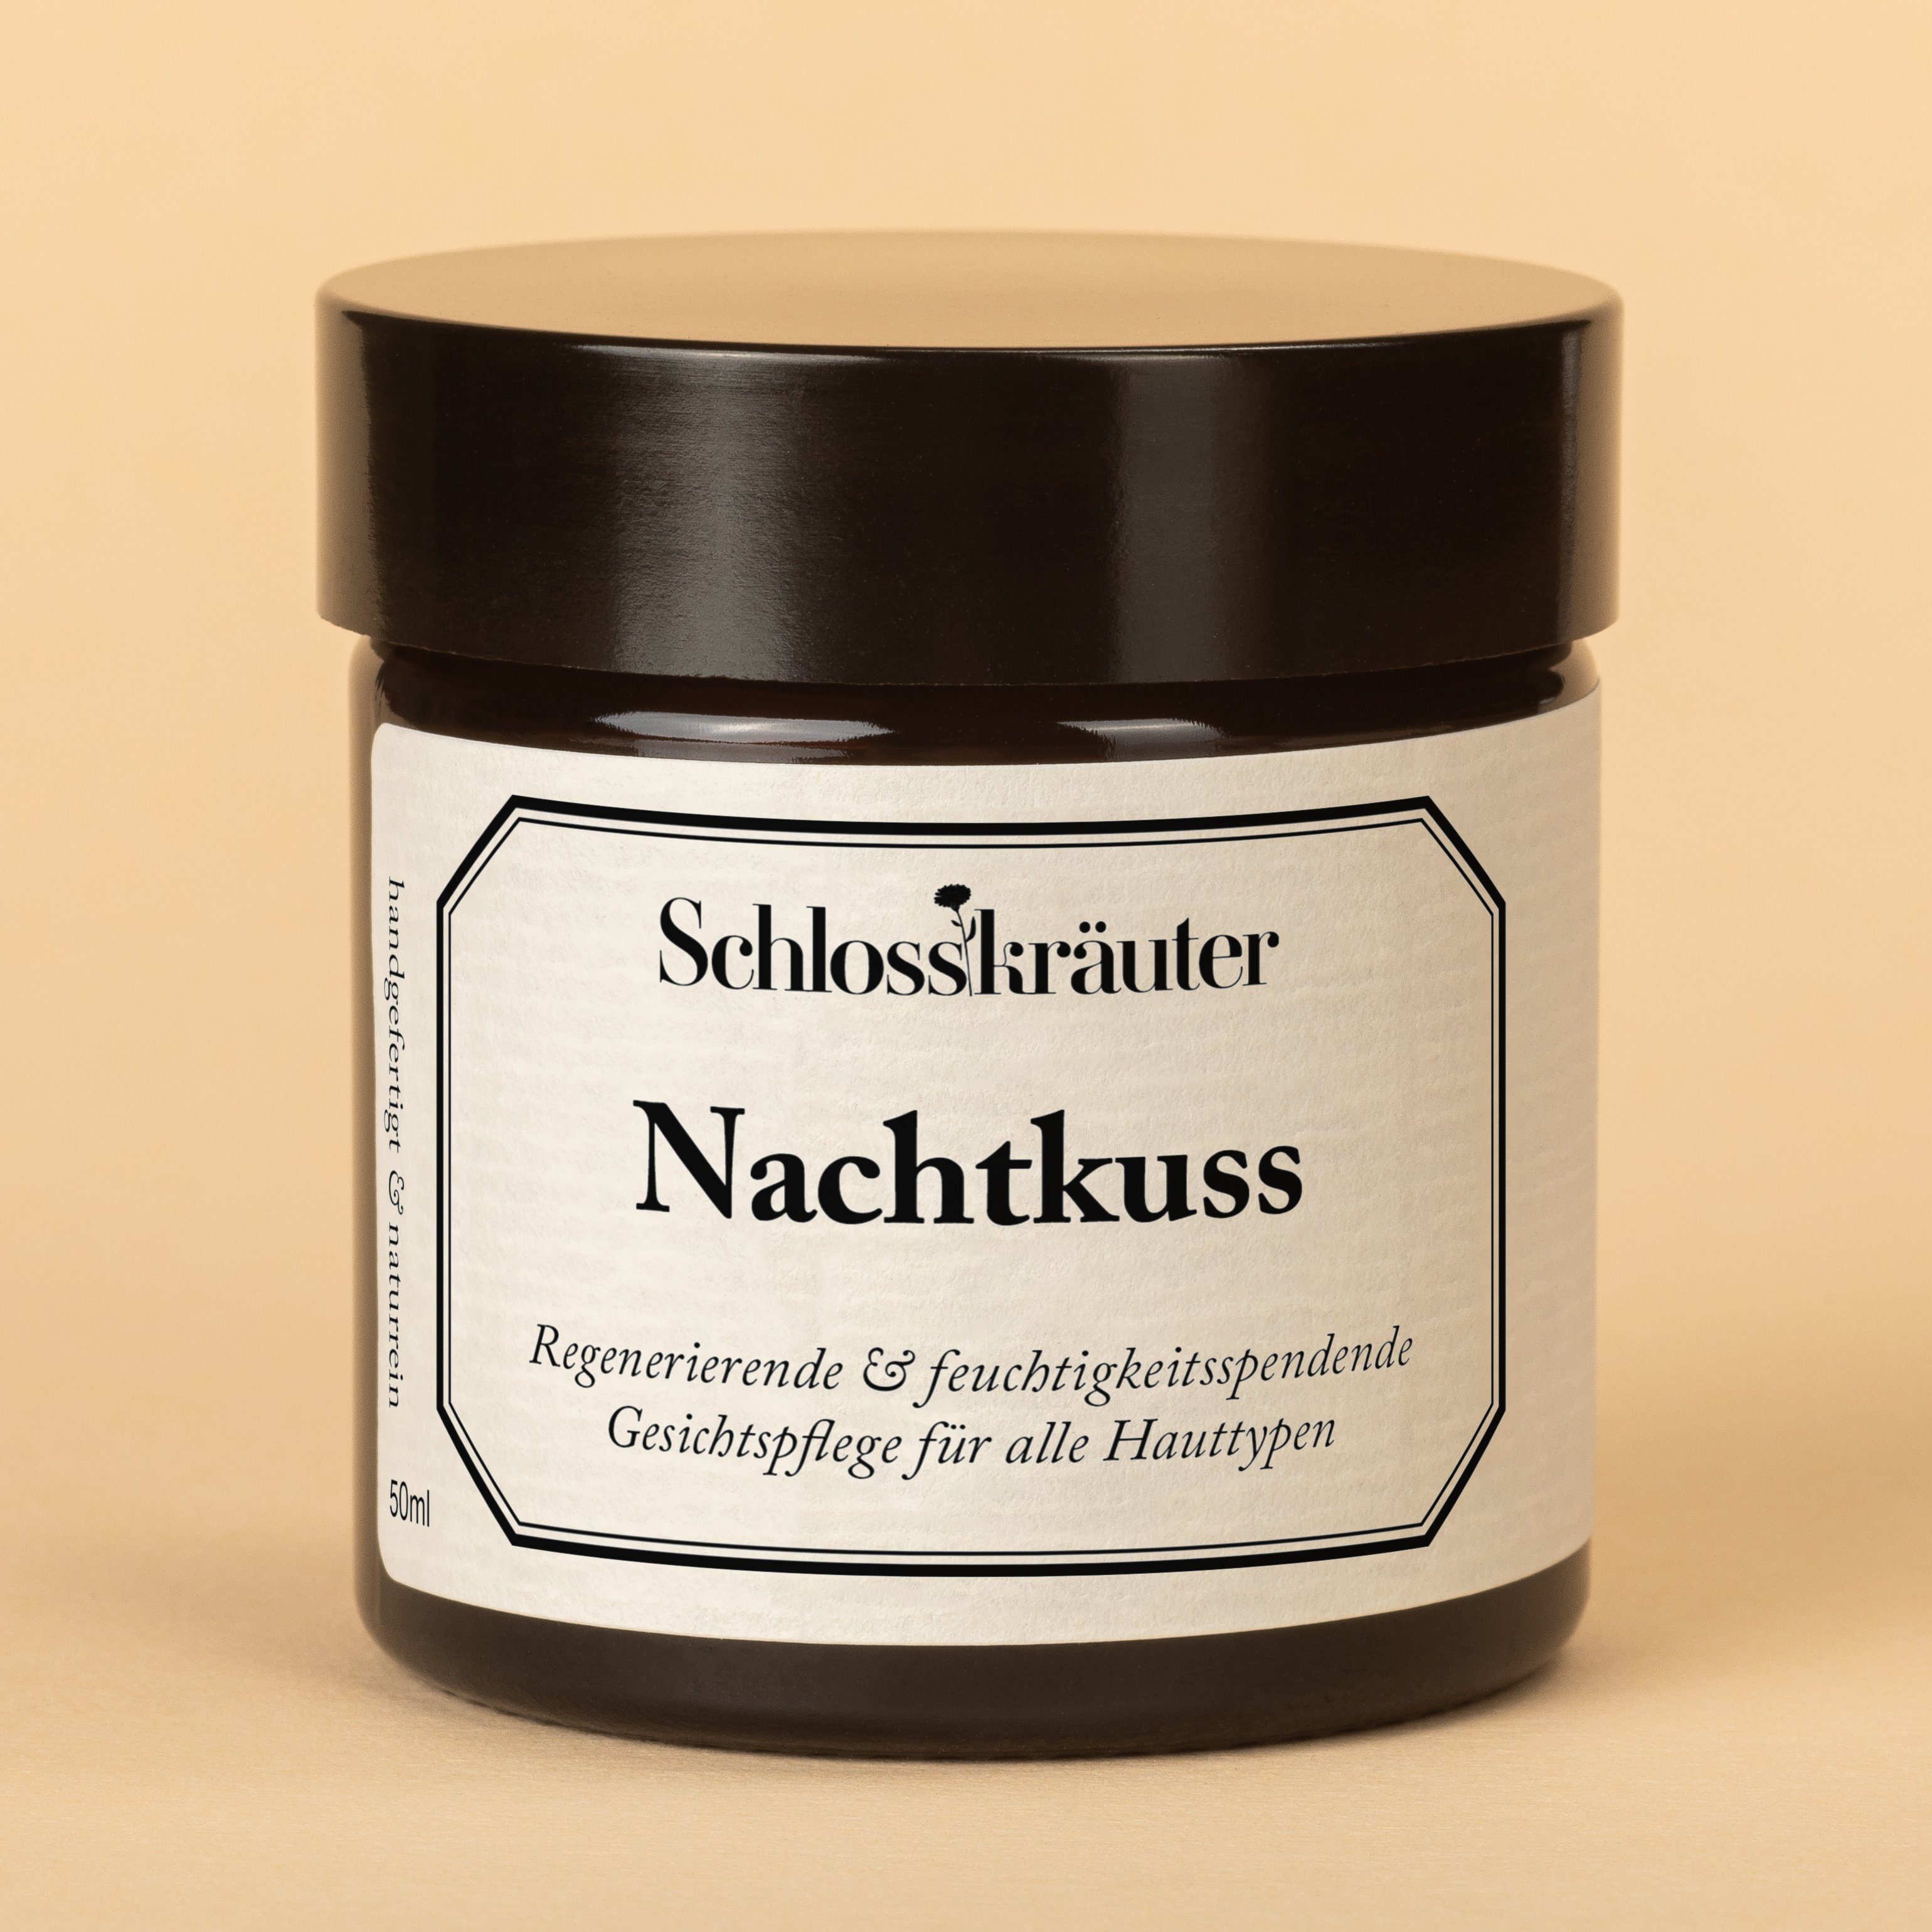 Schlosskräuter Nachtcreme Nachtkuss Gesichtscreme, Reichhaltige für Nachtcreme alle Hauttypen